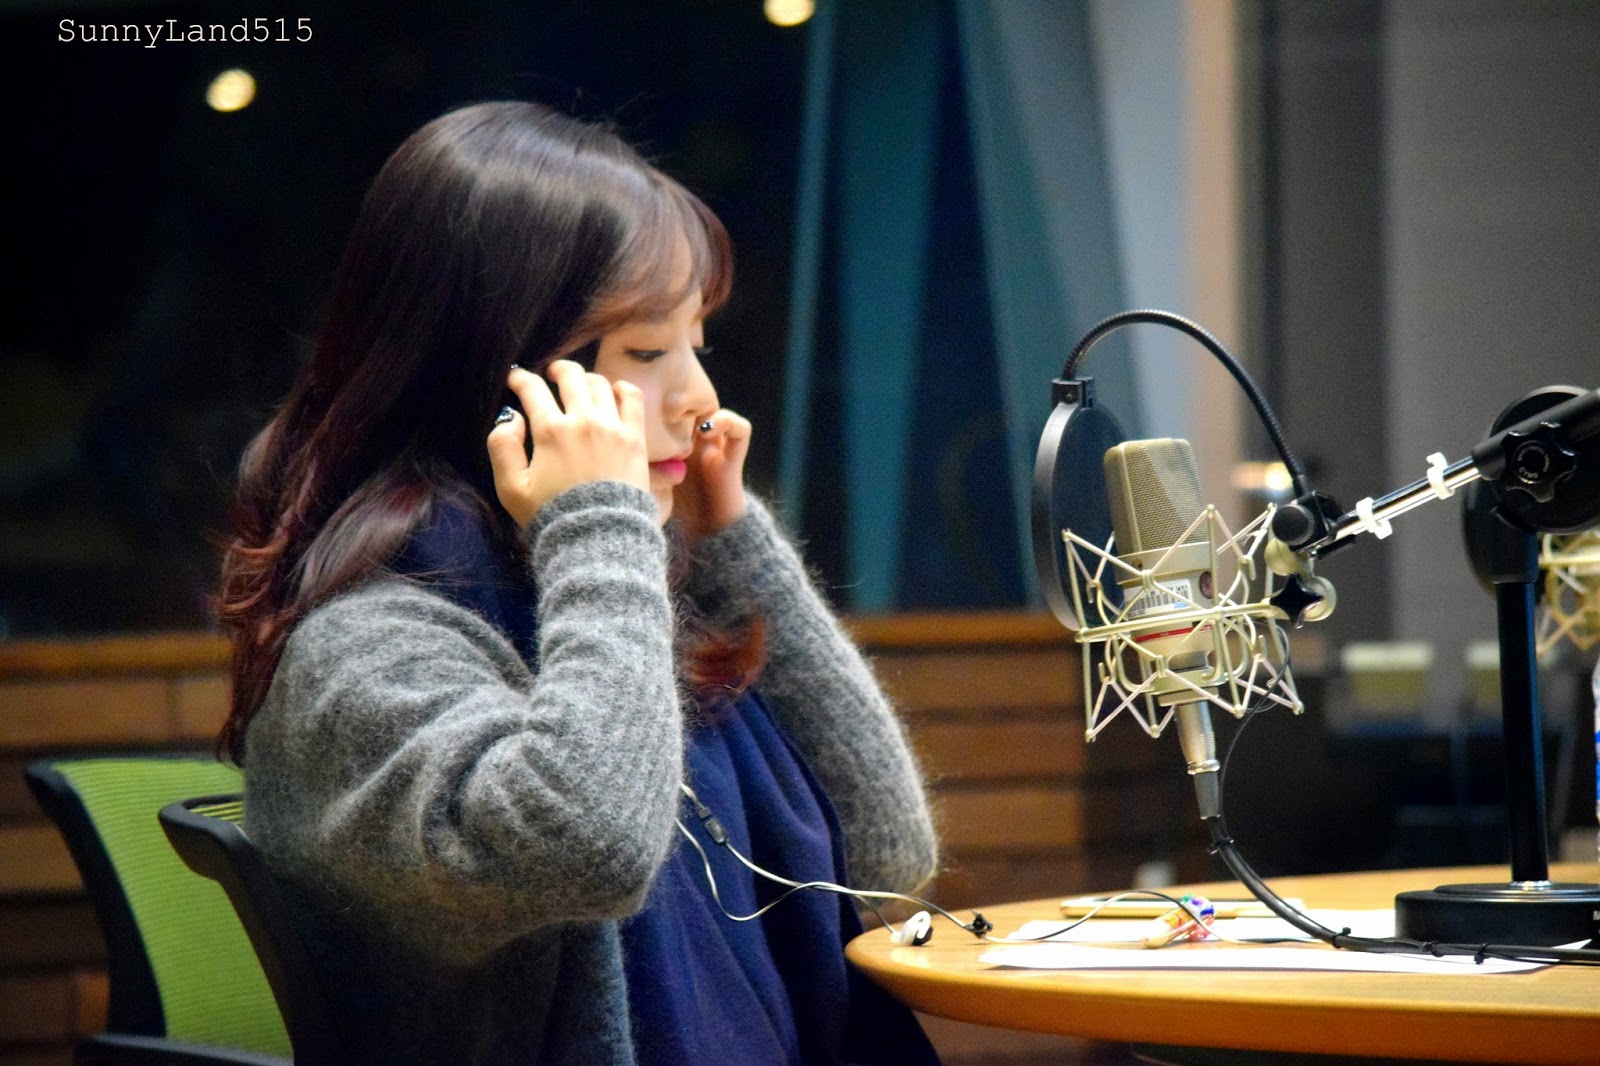 [OTHER][06-02-2015]Hình ảnh mới nhất từ DJ Sunny tại Radio MBC FM4U - "FM Date" - Page 10 DSC_0176_Fotor